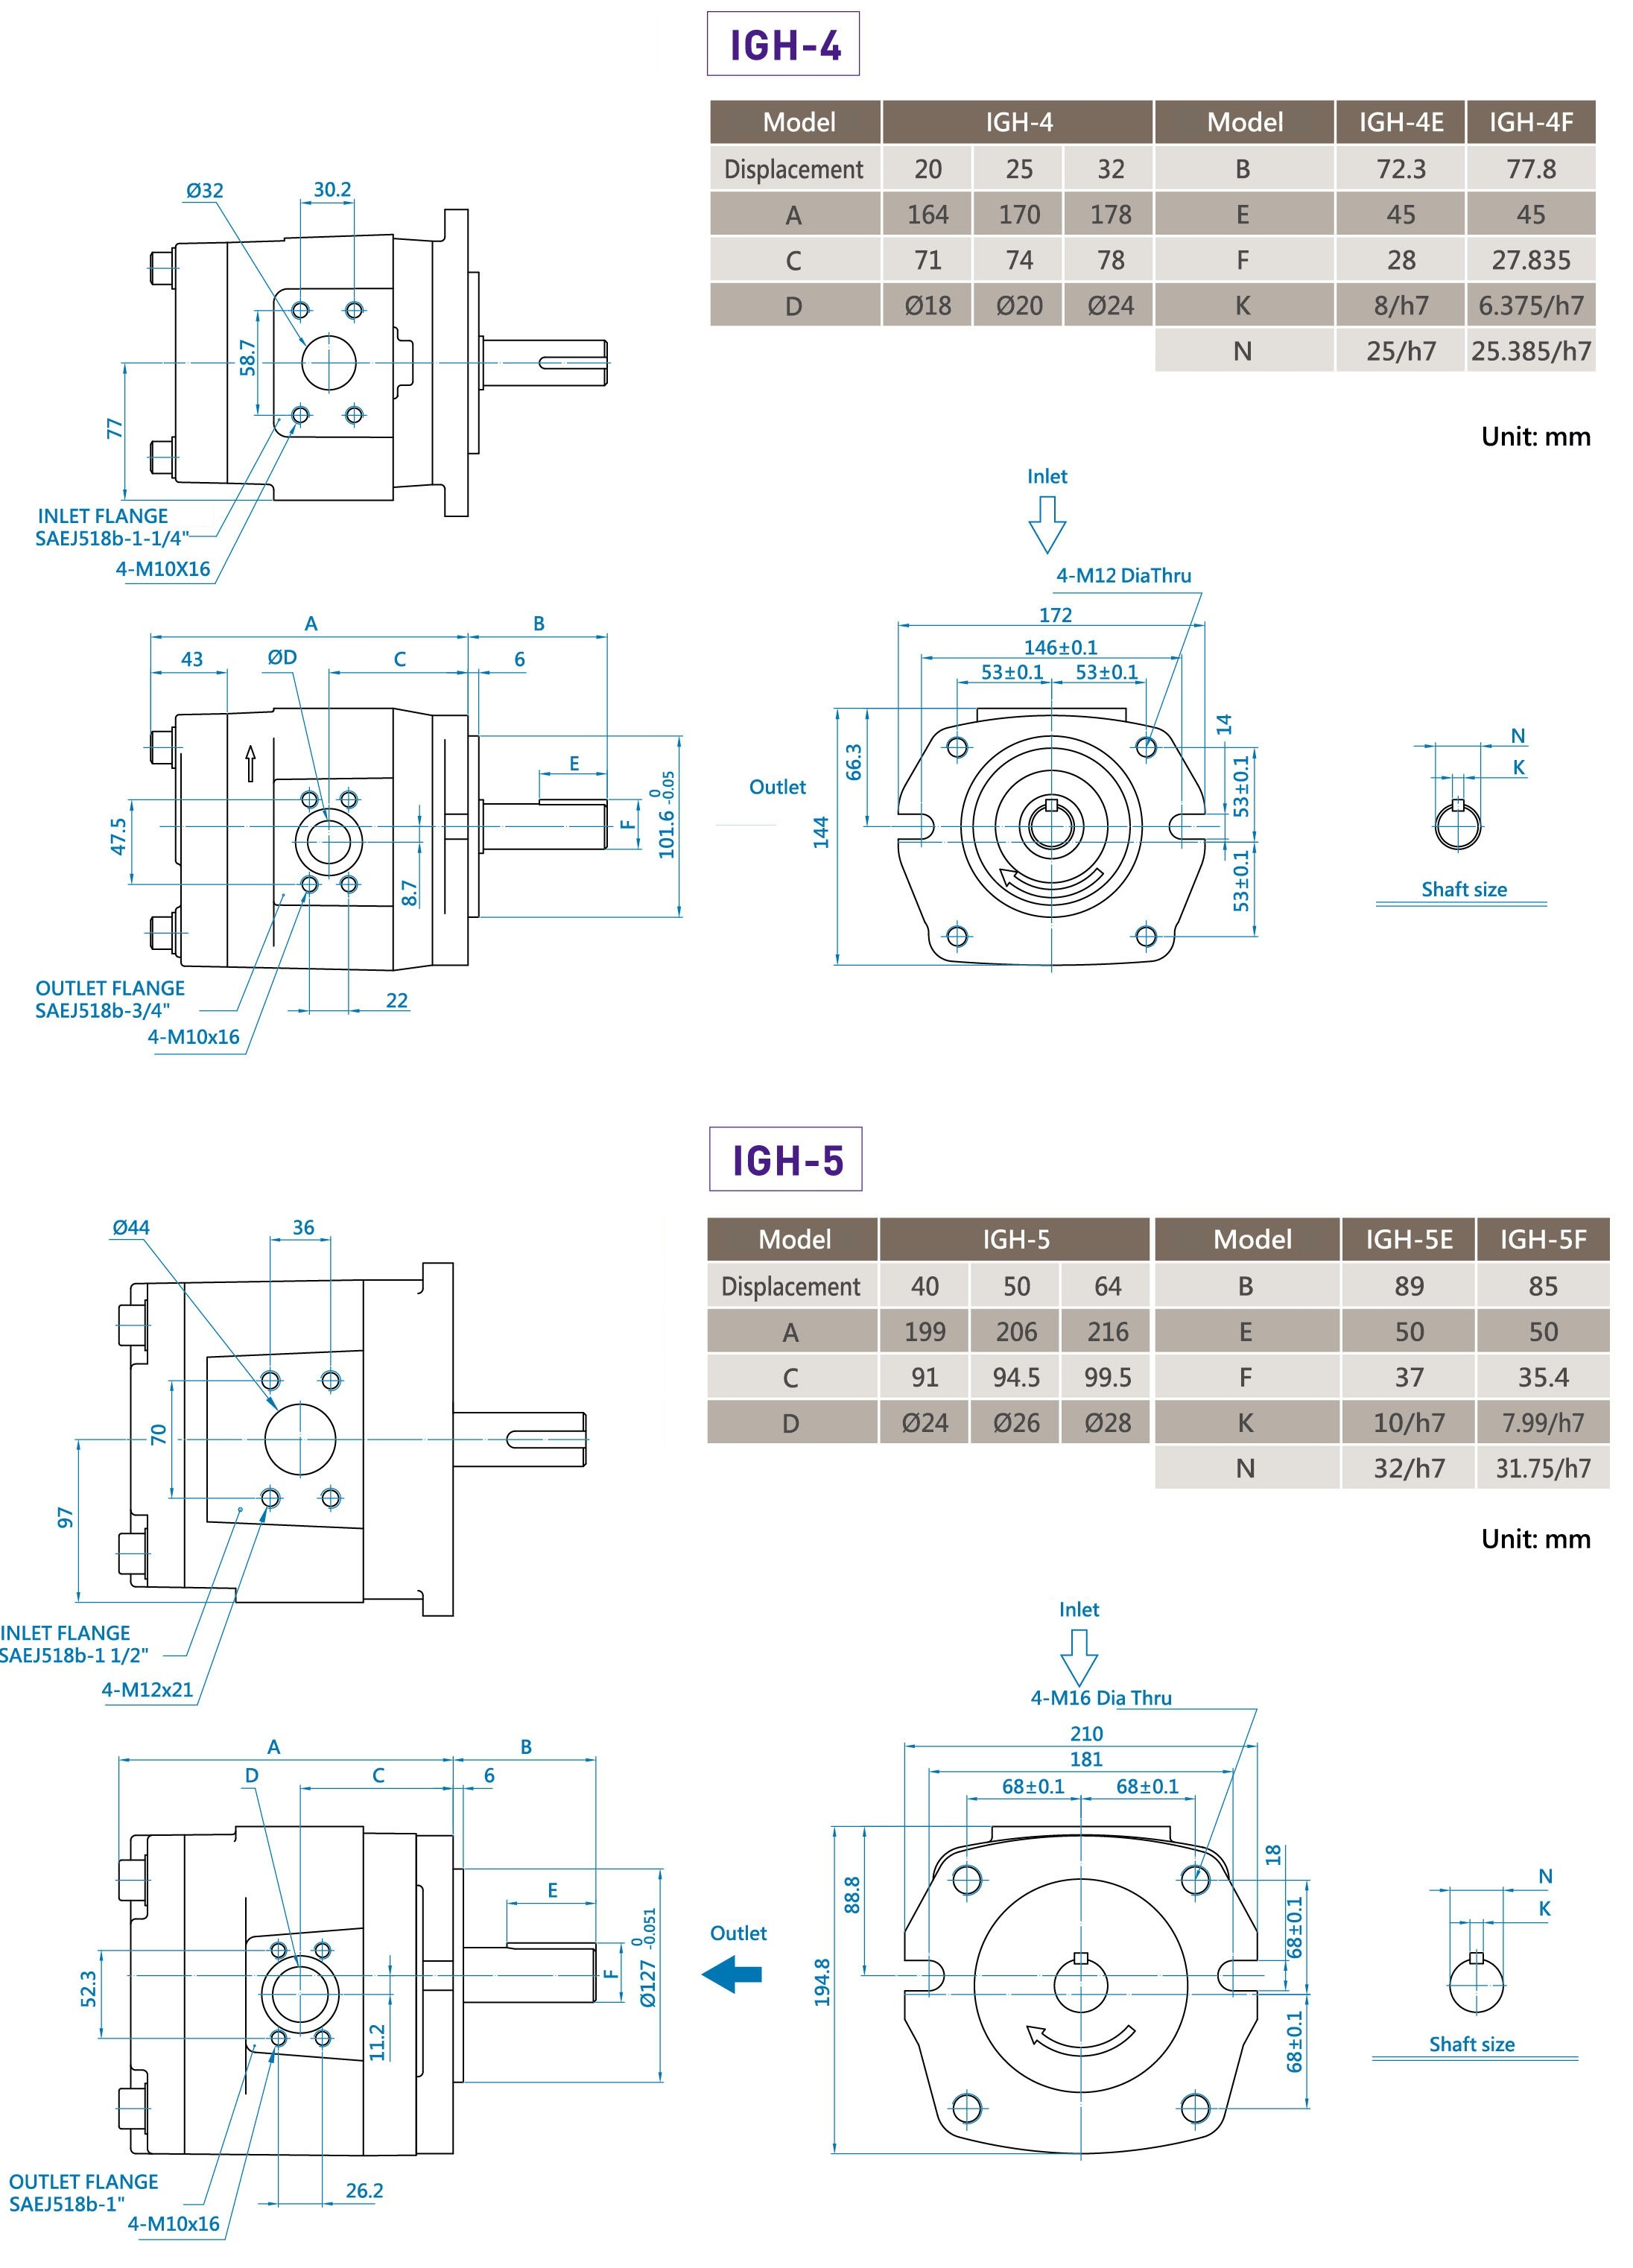 CML Dimensione della pompa ad ingranaggi interni ad alta pressione, Diagramma IGH 4 IGH 5